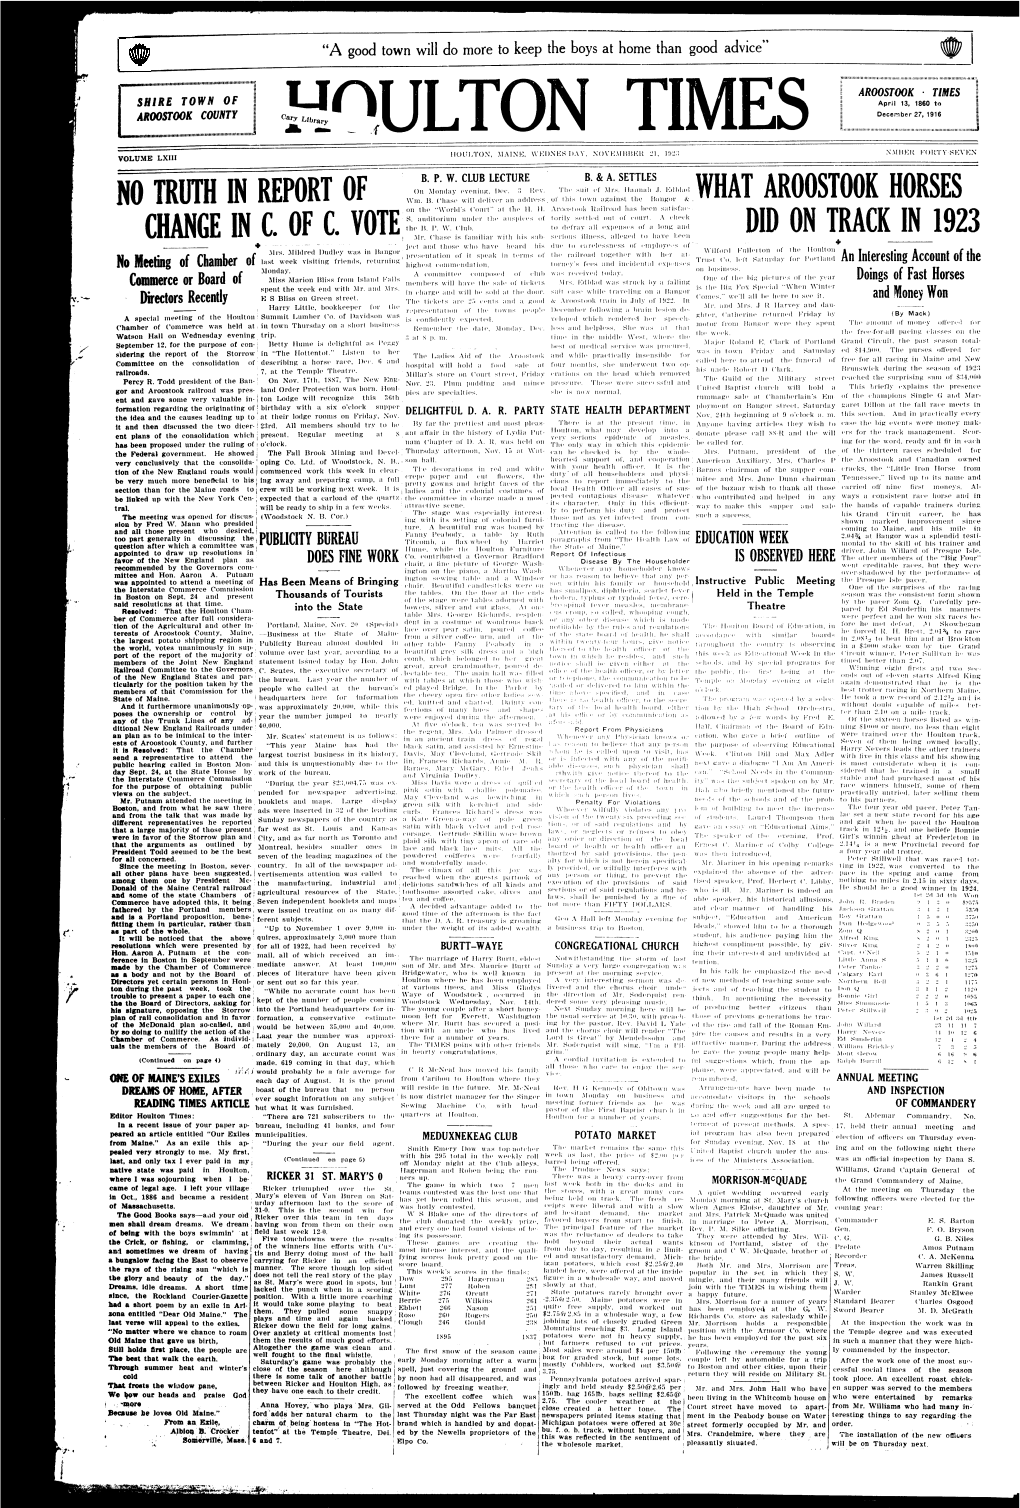 Houlton Times, November 21, 1923